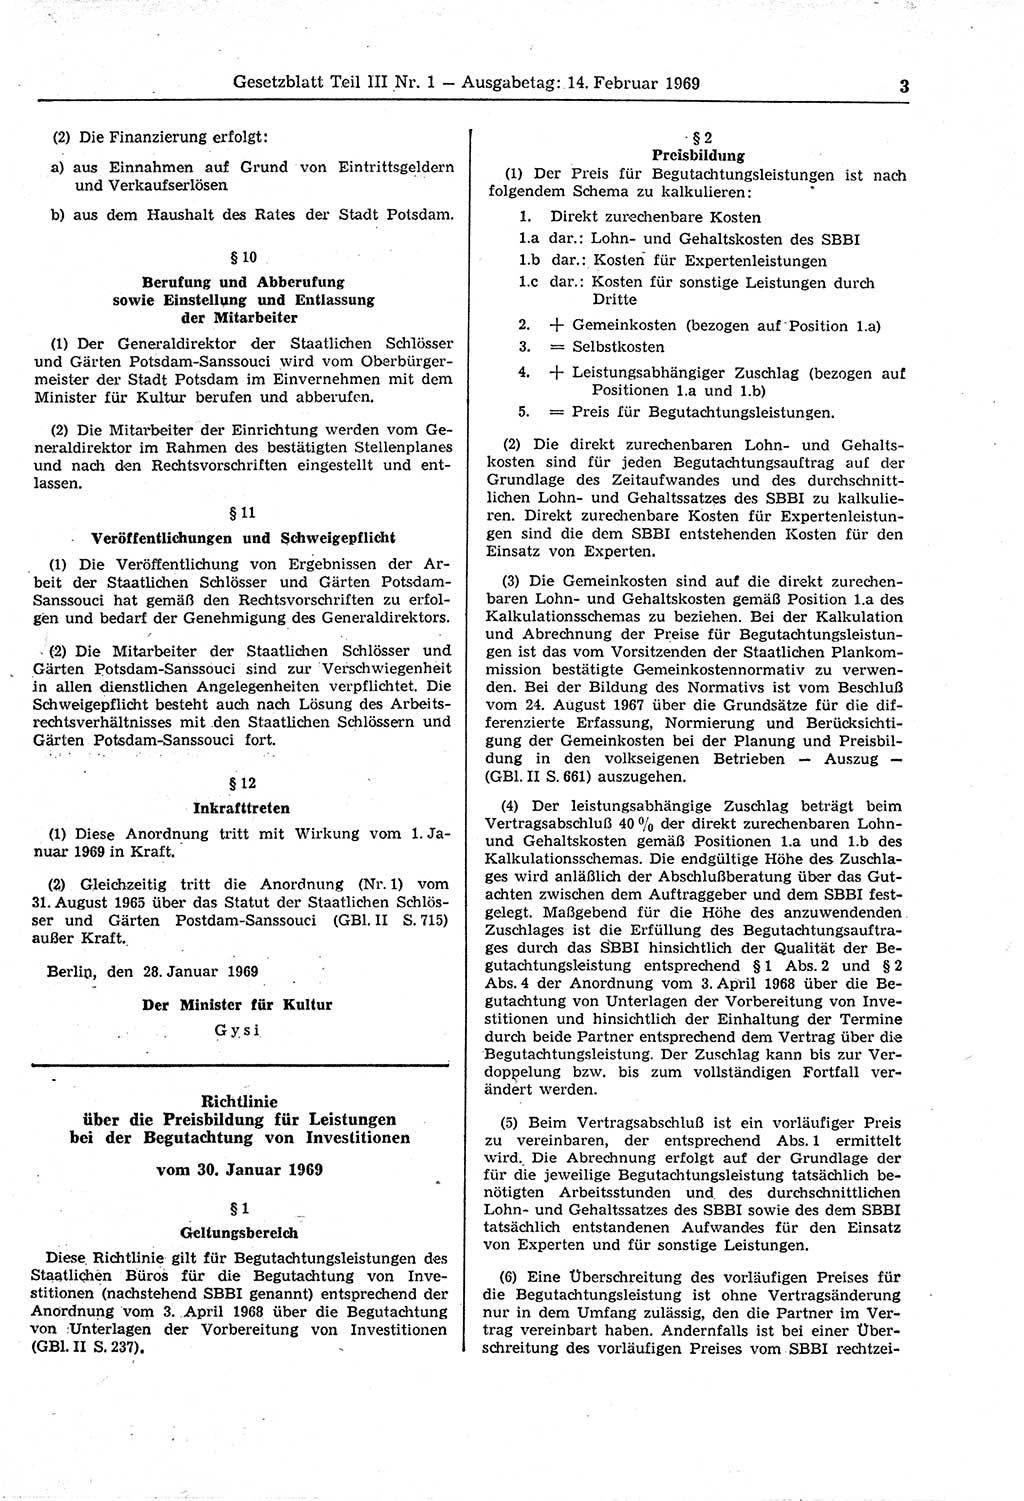 Gesetzblatt (GBl.) der Deutschen Demokratischen Republik (DDR) Teil ⅠⅠⅠ 1969, Seite 3 (GBl. DDR ⅠⅠⅠ 1969, S. 3)